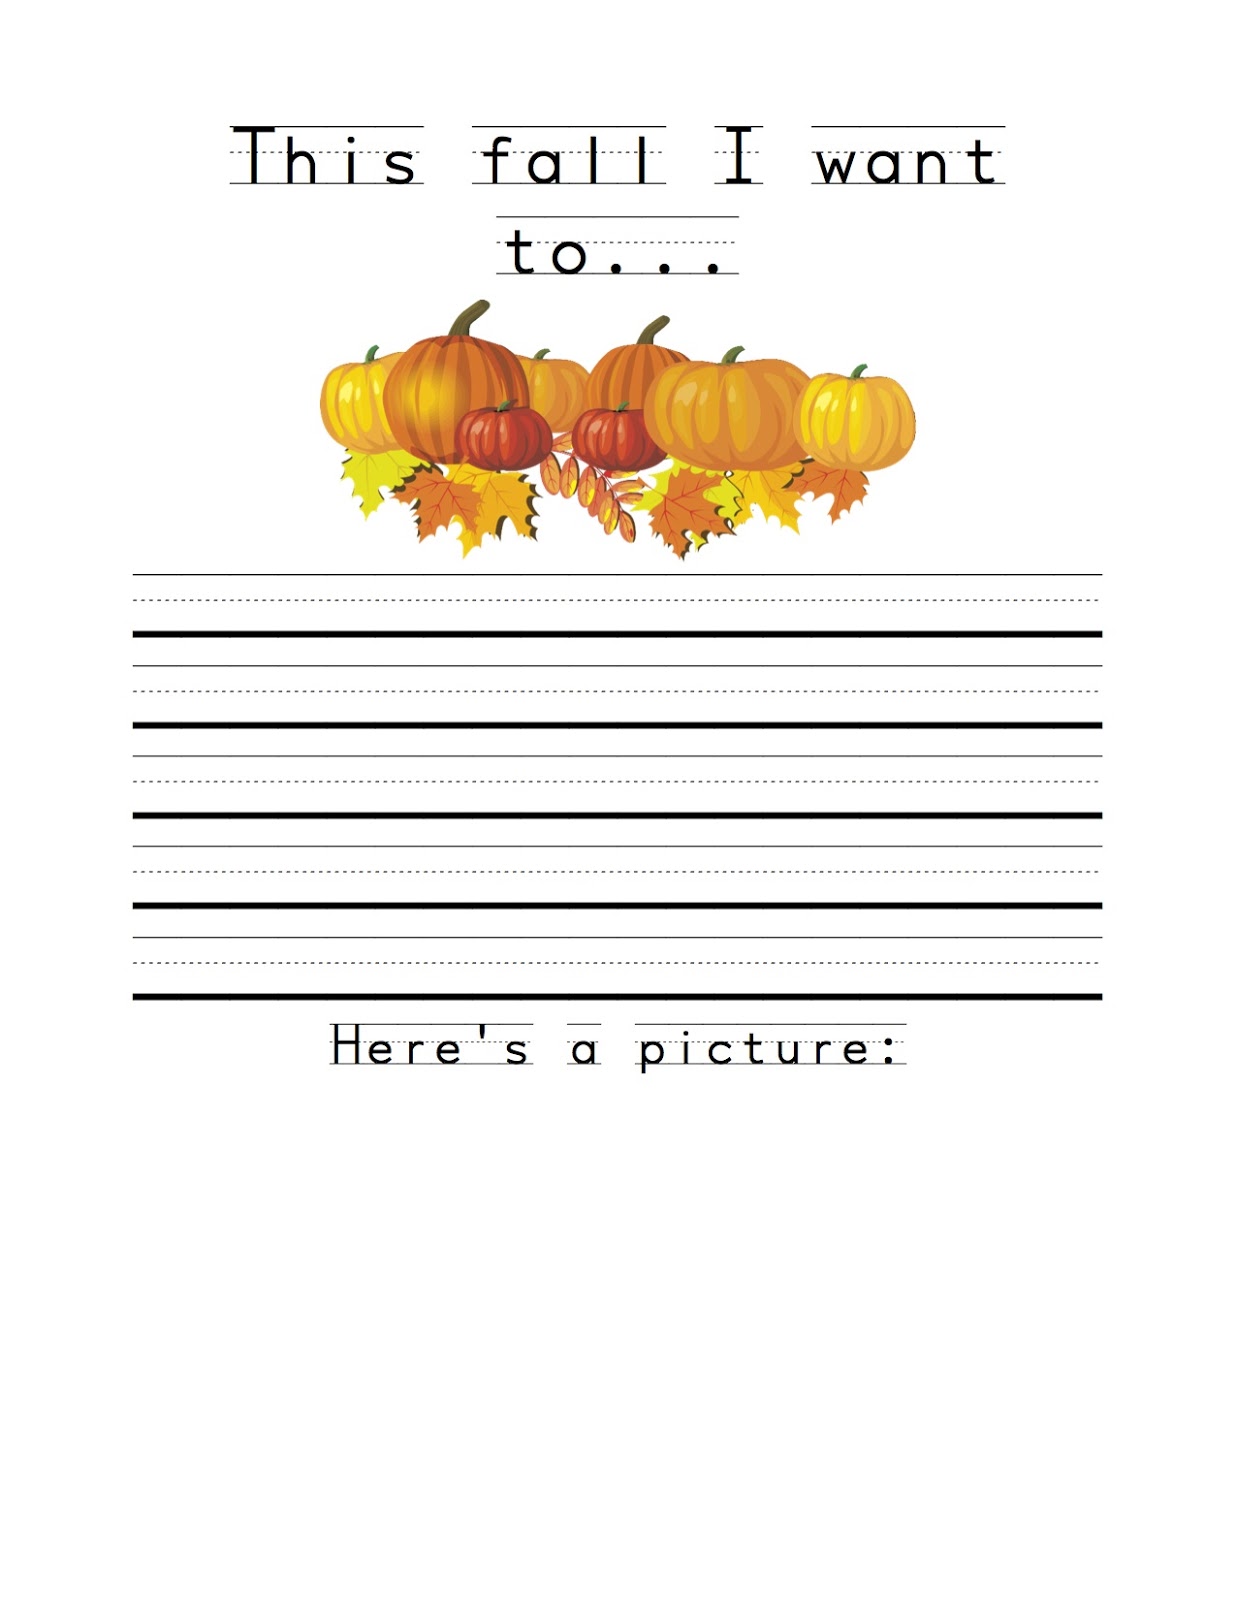 preschool-fall-journal-the-crafty-teacher